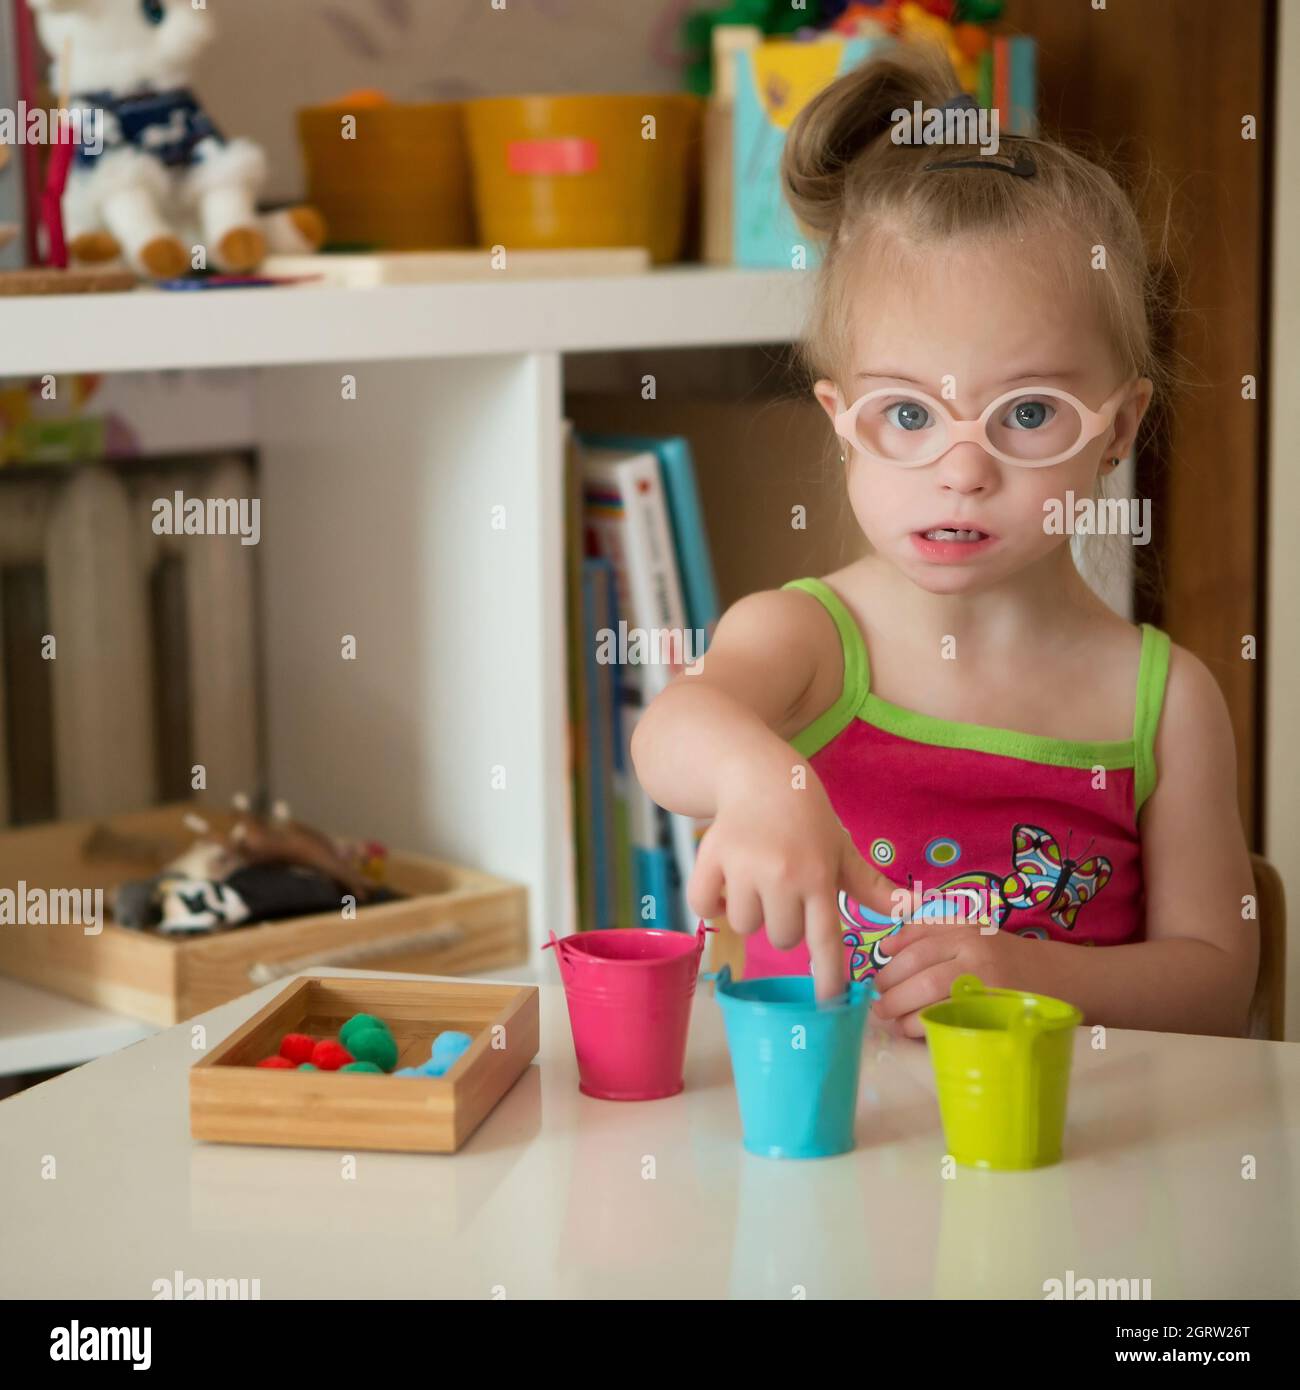 La niña con síndrome de Down desarrolla habilidades motoras finas de las manos Foto de stock